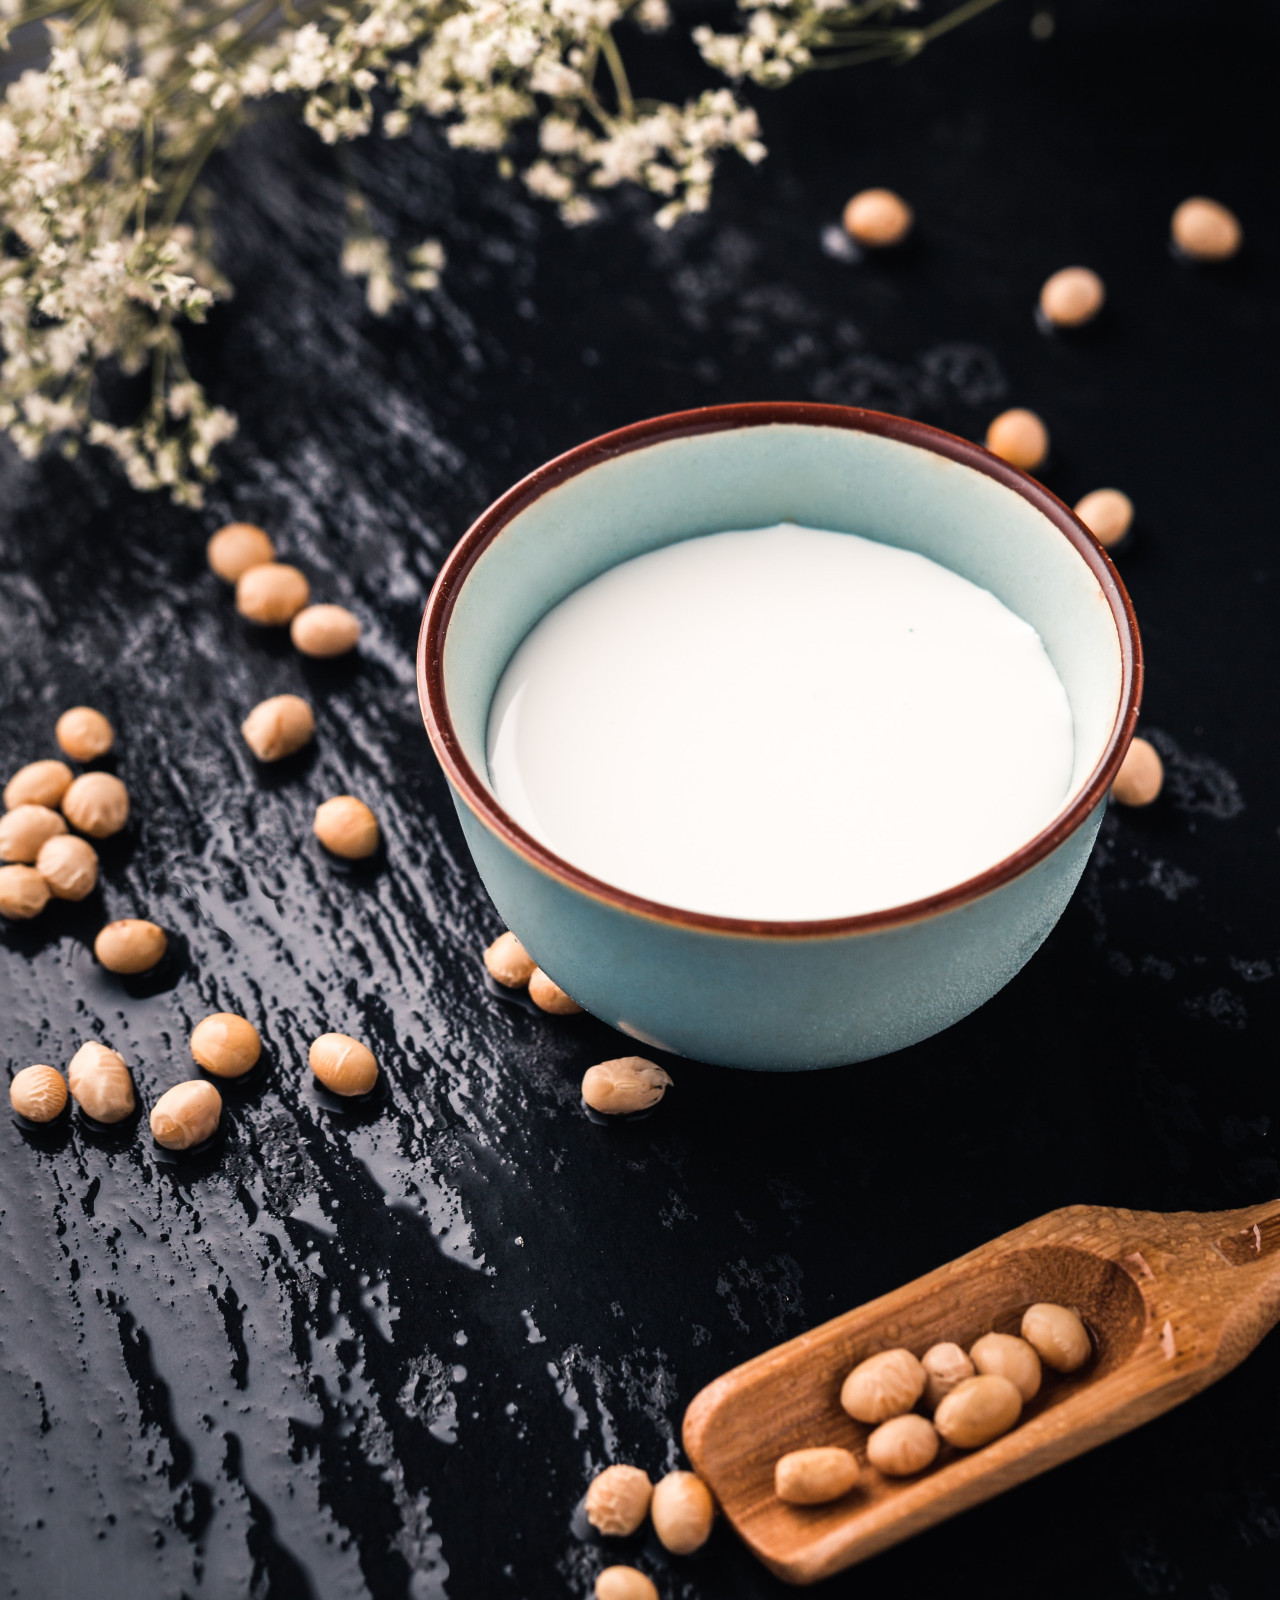 La leche de soja es muy consumida a nivel mundial. De ella se obtienen casi los mismos beneficios que de la leche de vaca. Unsplash.